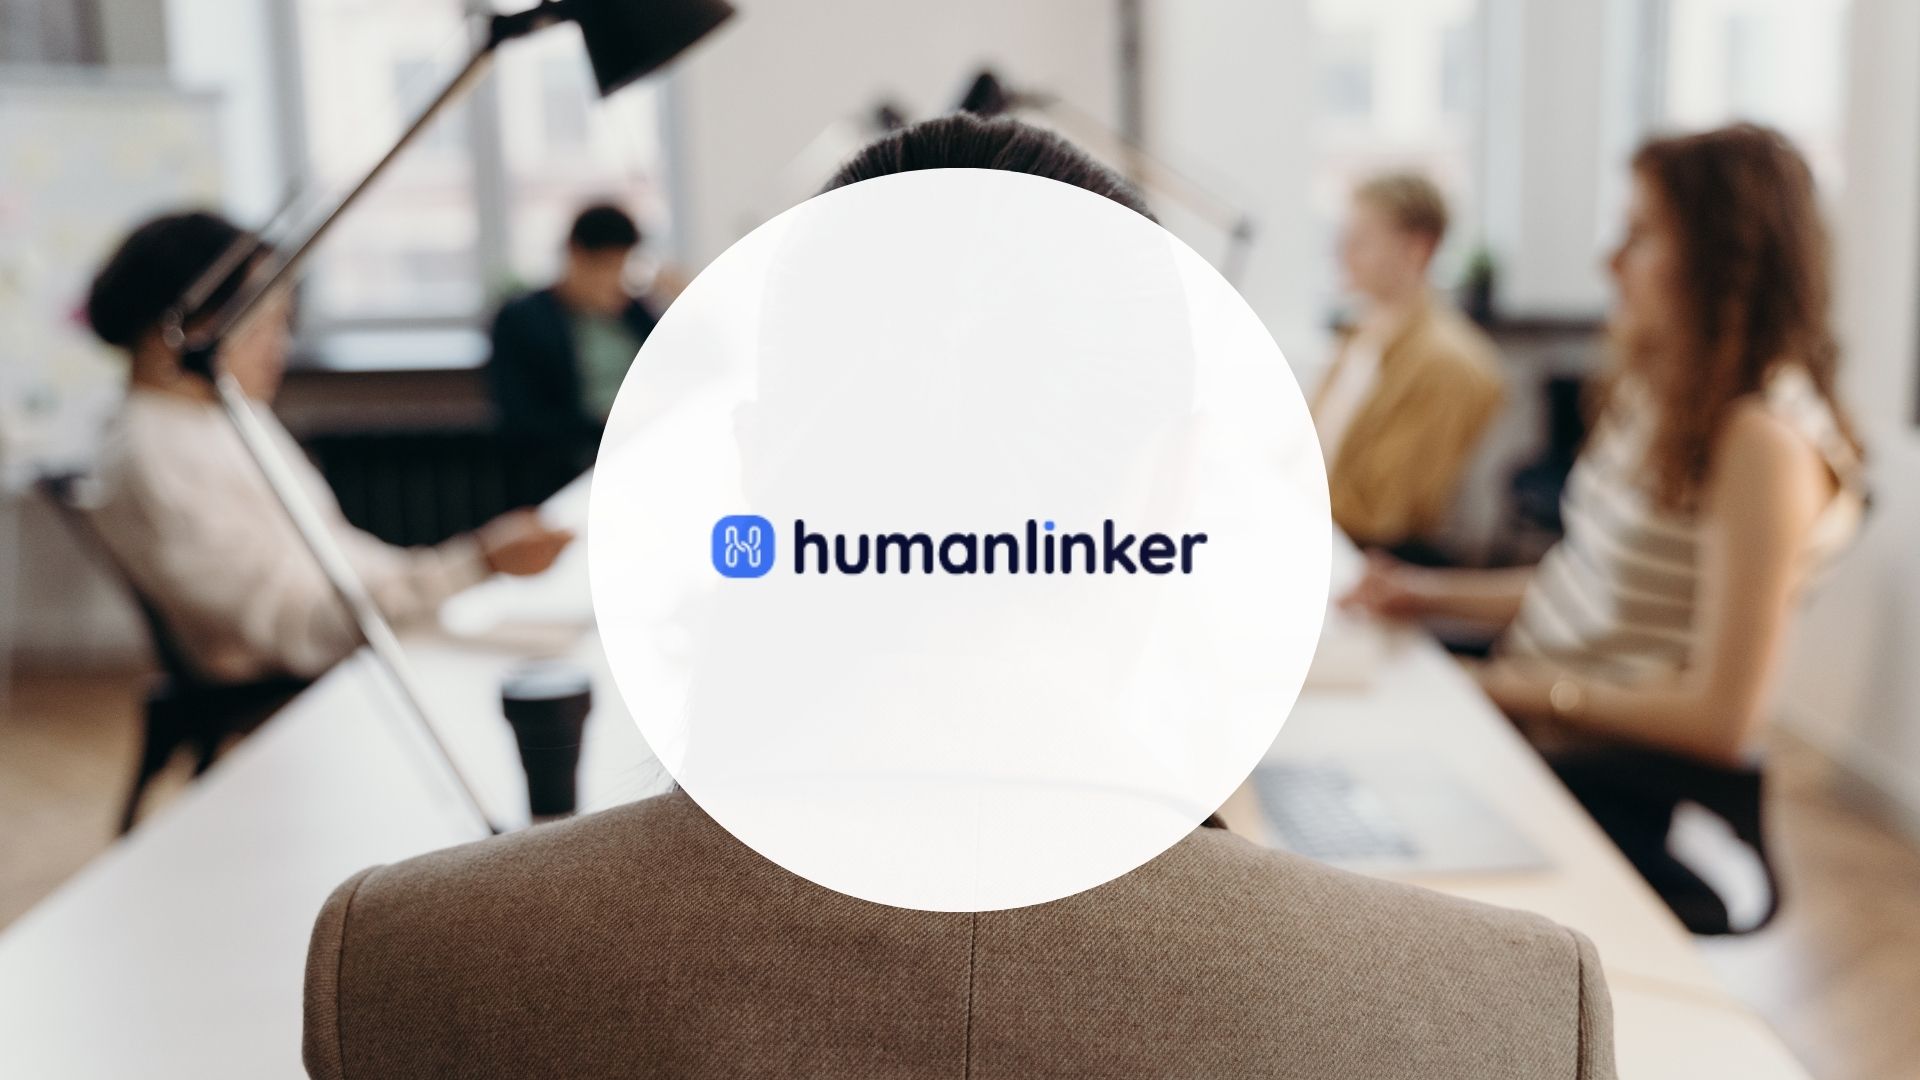 humanlinker